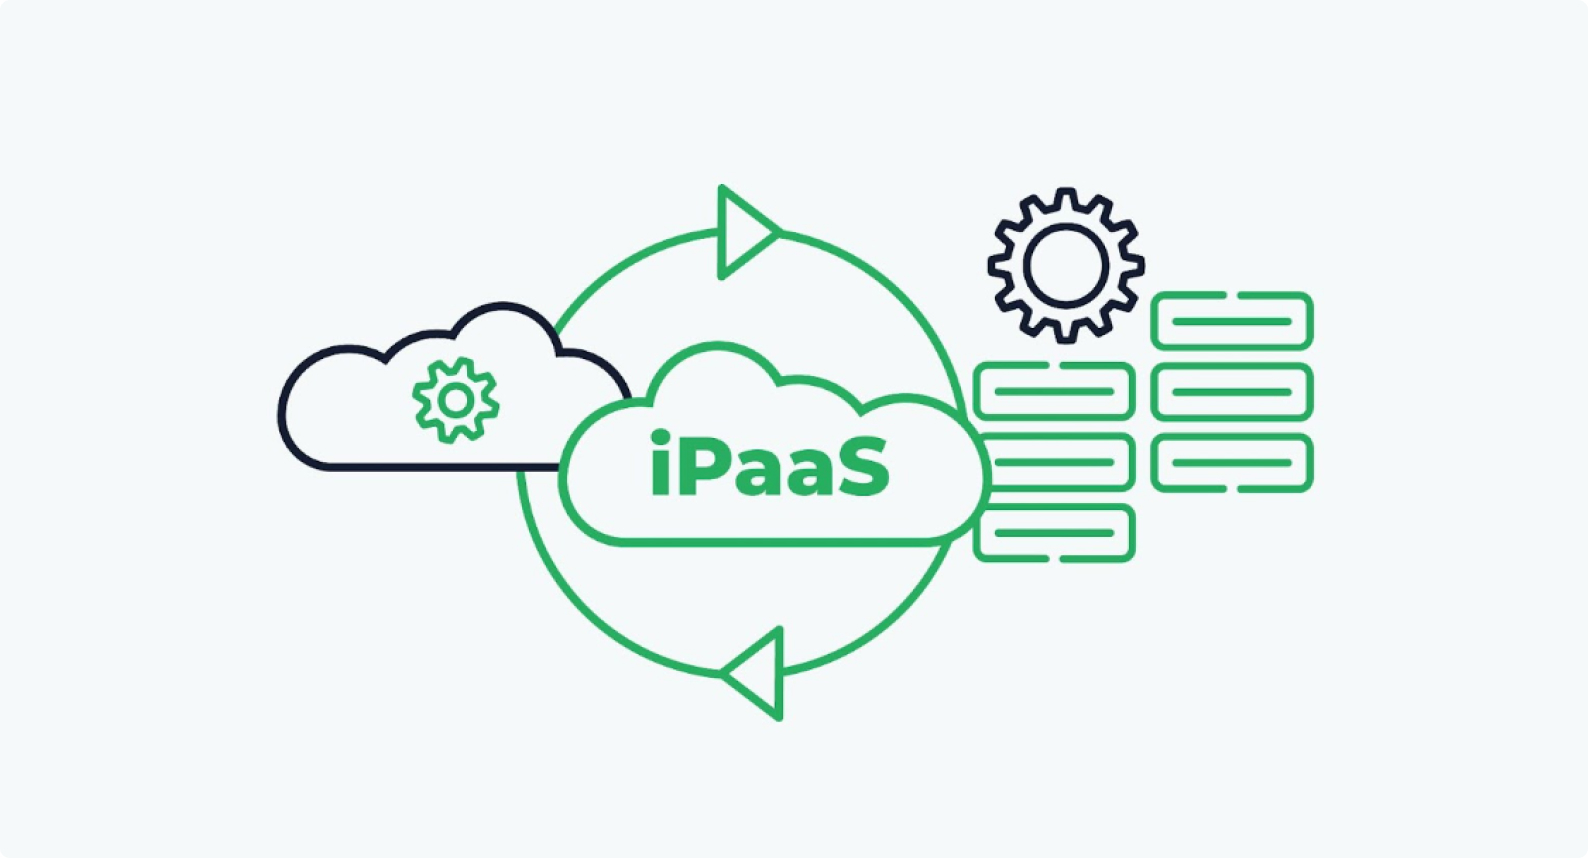 ¿Qué es un iPaaS?